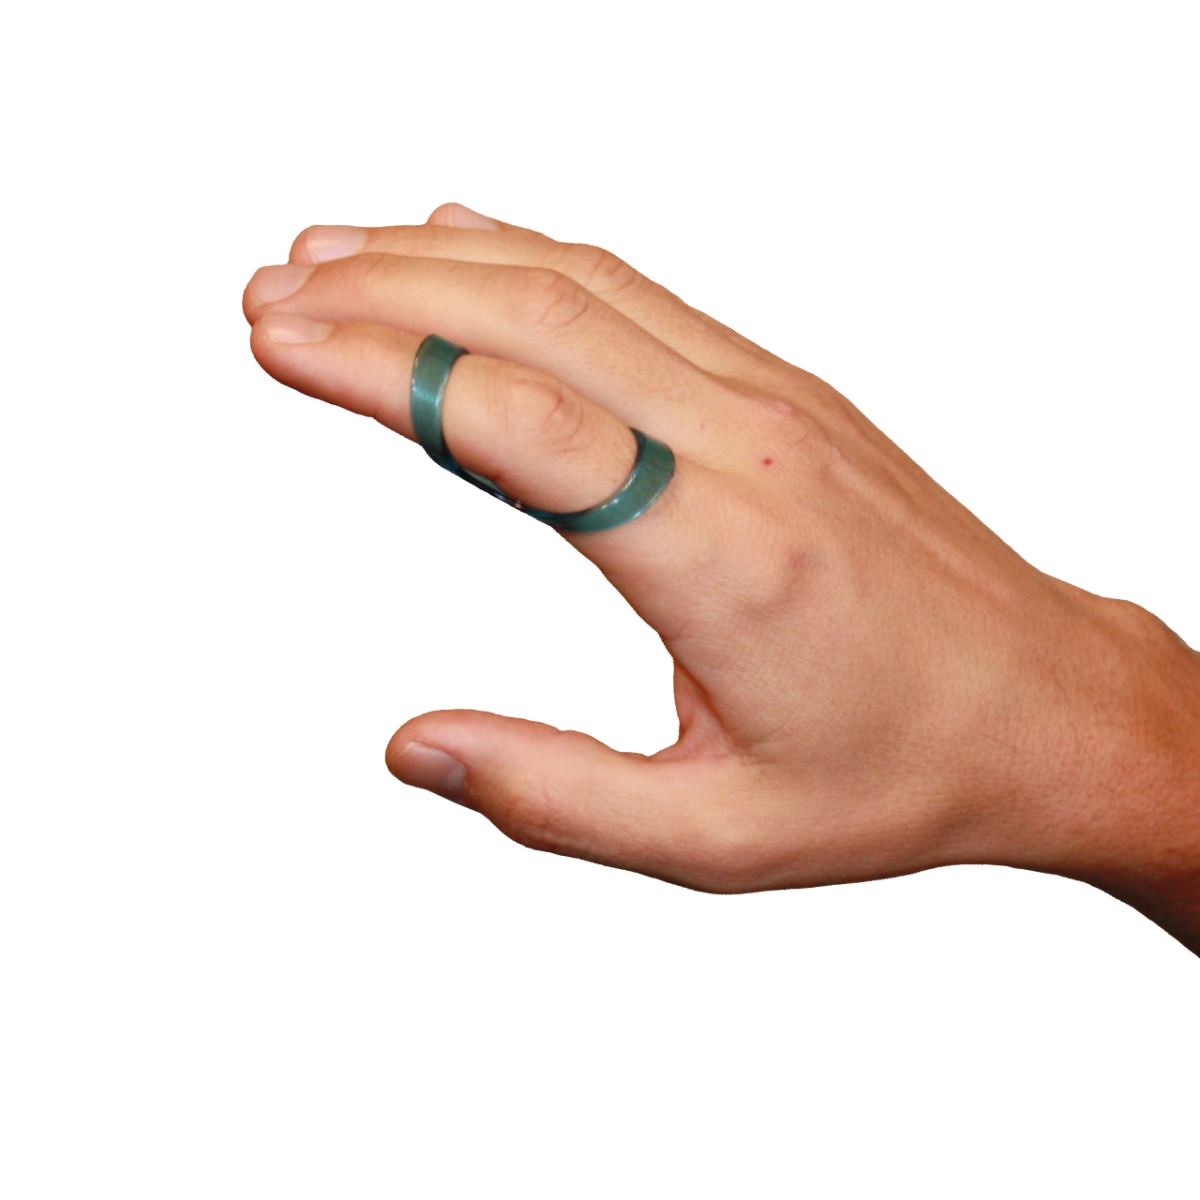 Fixační ortéza na prst krátká transparentní CATELL, vel. 33, C5180*33